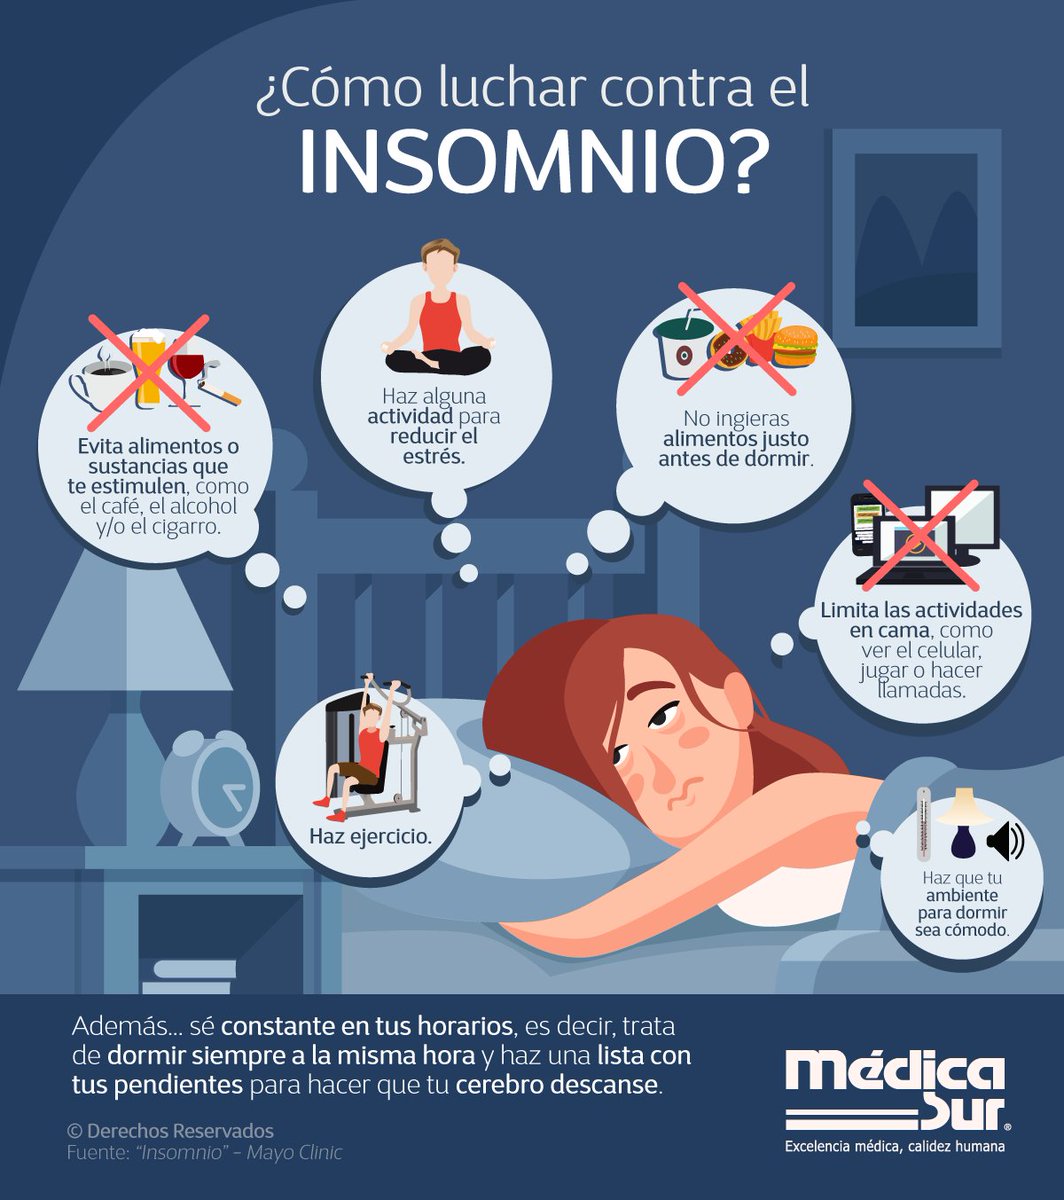 cazar matiz En marcha Médica Sur on Twitter: "¿Tienes problemas para dormir? El #insomnio puede  ser un síntoma del estado de #estrés o #ansiedad por #COVID19. Conoce más:  https://t.co/RBMwIC4B9C #MédicaSurTeCuida #Cuarentena #Coronavirusmexico  #Coronavirus #Fase3 ...